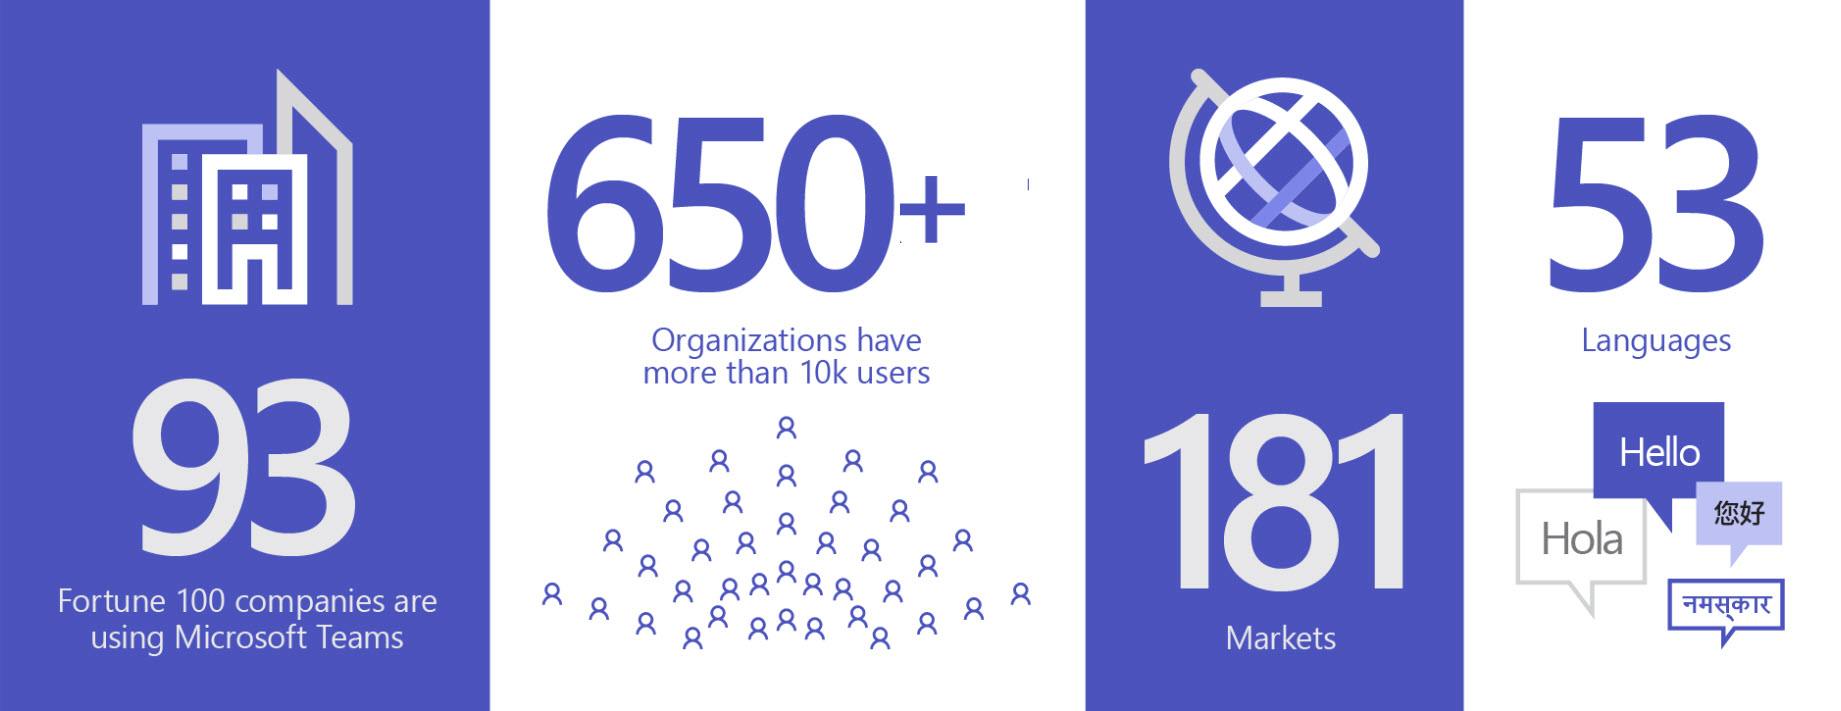 Imagem mostrando 93 organizações que usam o Teams, mais de 650 organizações têm mais de 10.000 usuários, em 181 mercados e em 53 idiomas.